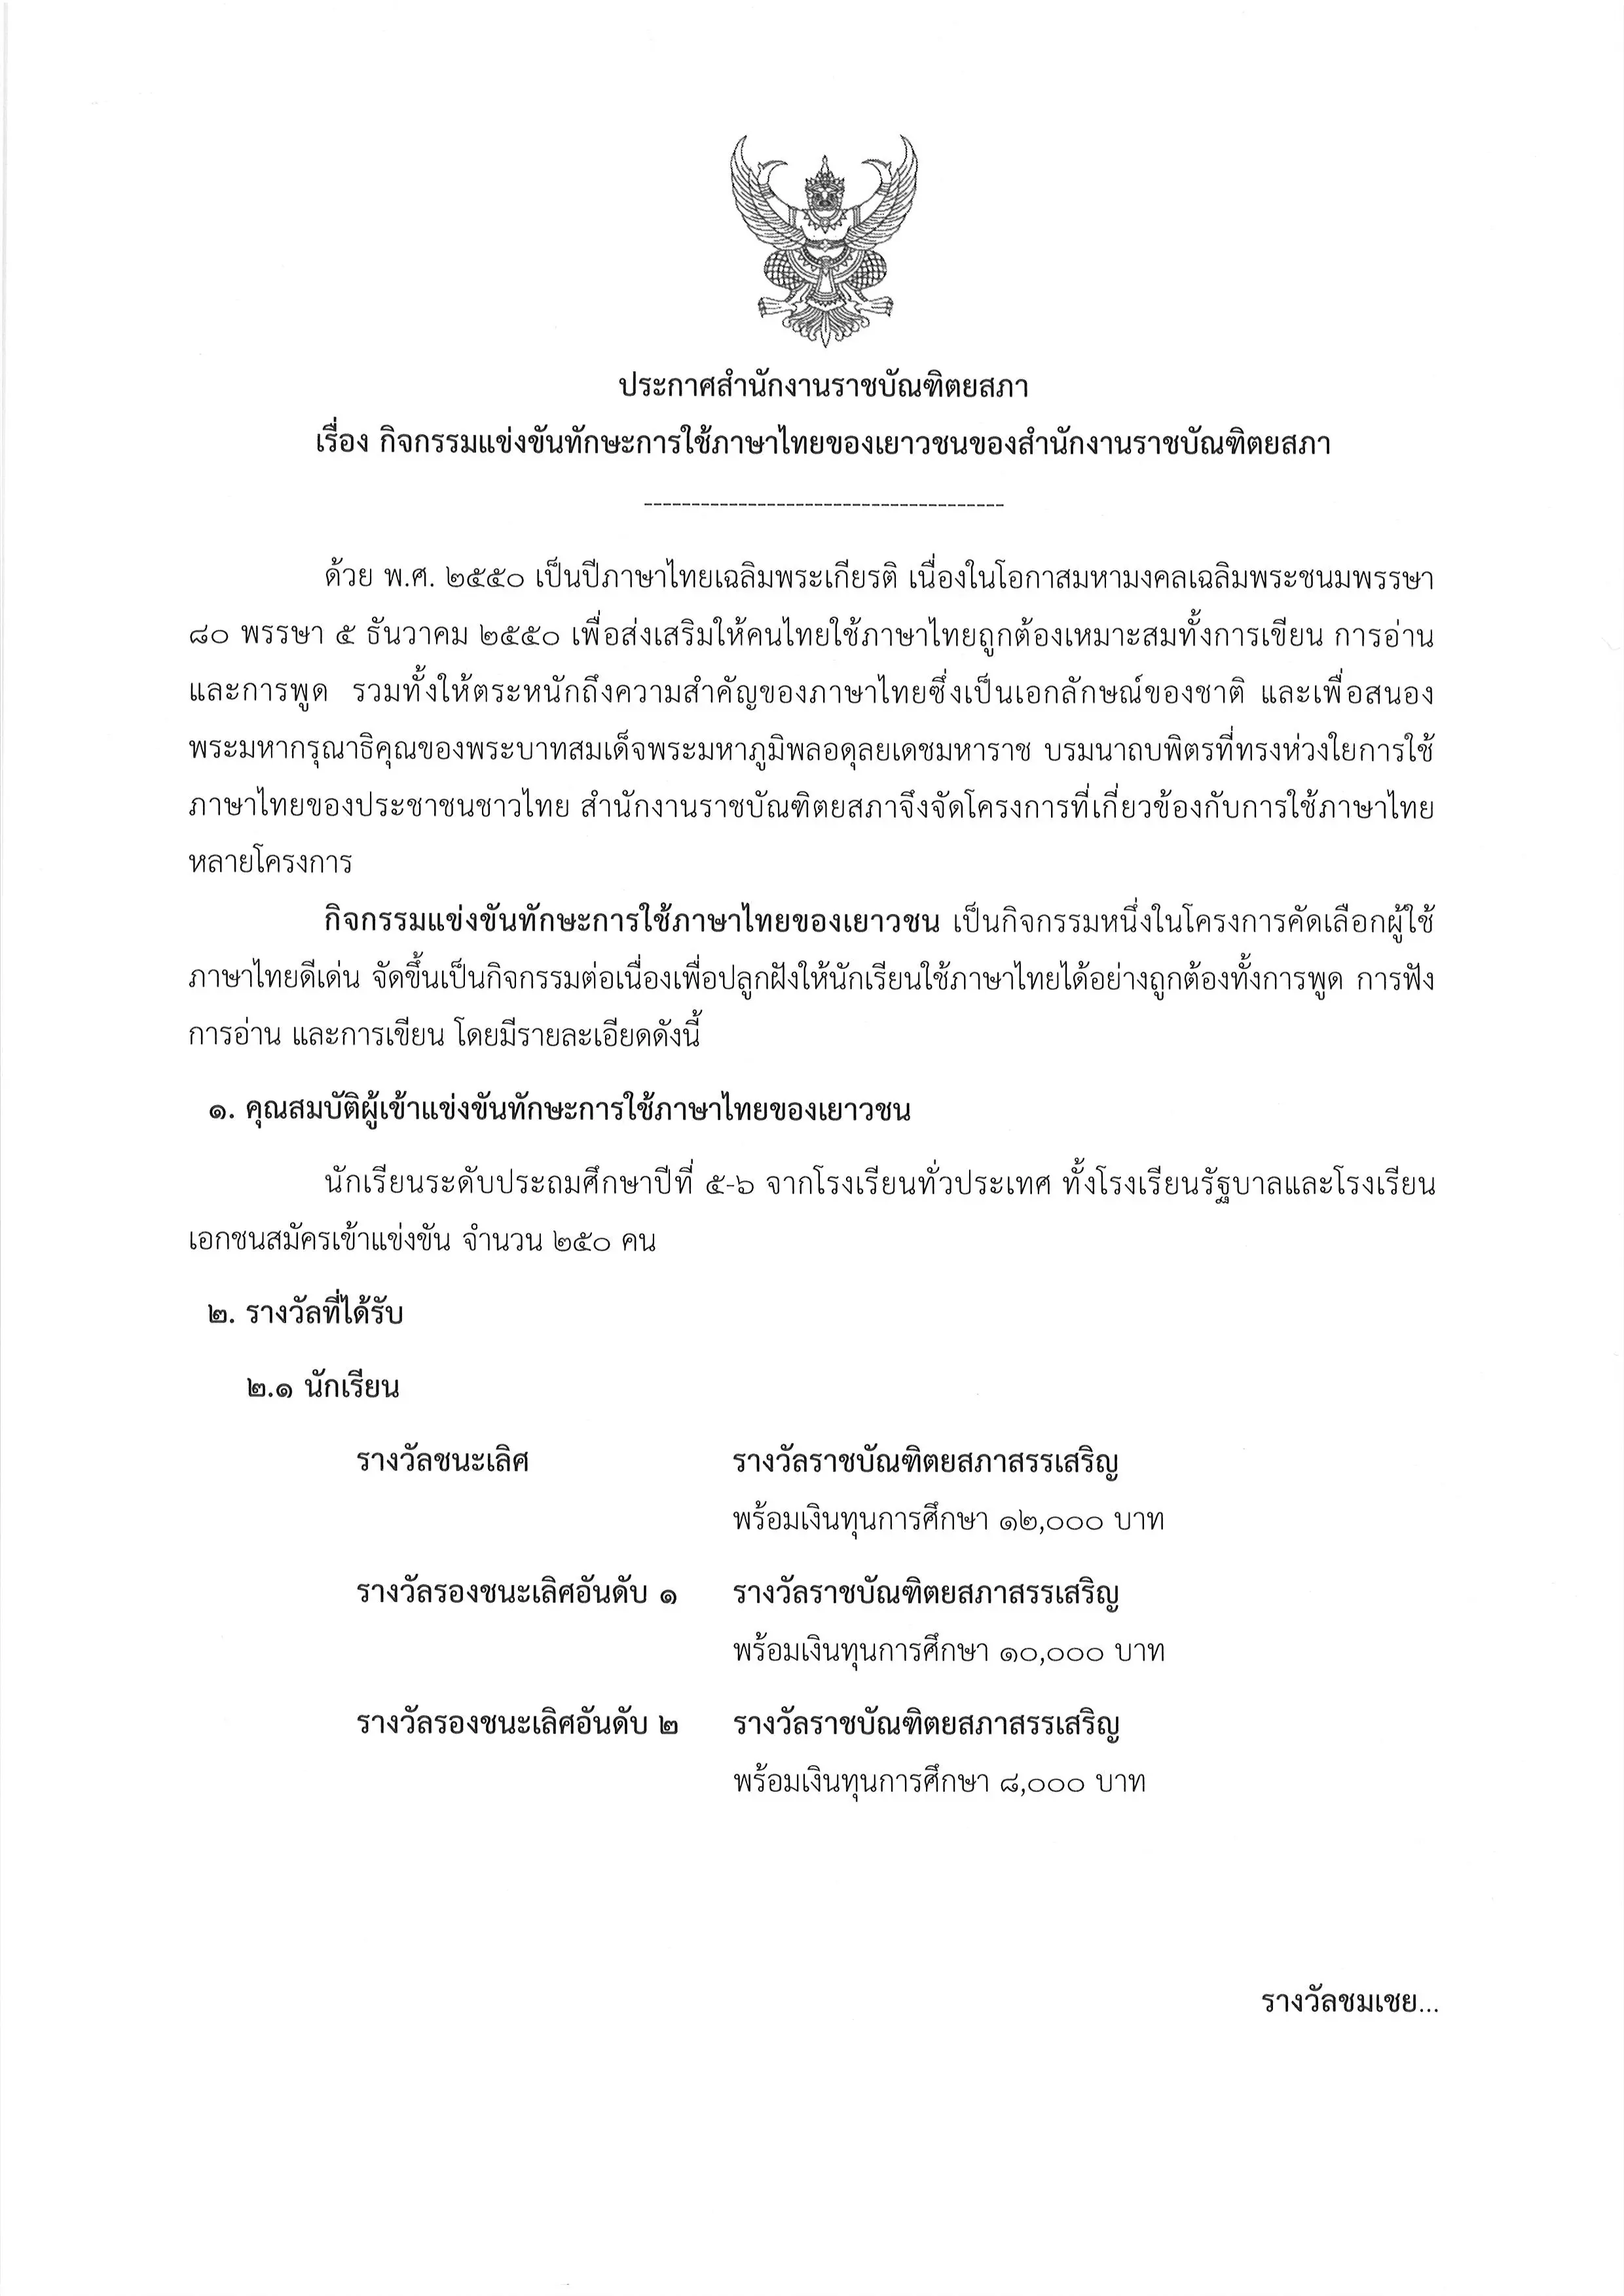 ราชบัณฑิตฯ จัดการแข่งขันทักษะการใช้ภาษาไทยของเยาวชน ประจำพุทธศักราช ๒๕๖๓ สมัครภายใน ๒๘ พฤษภาคม ๒๕๖๔